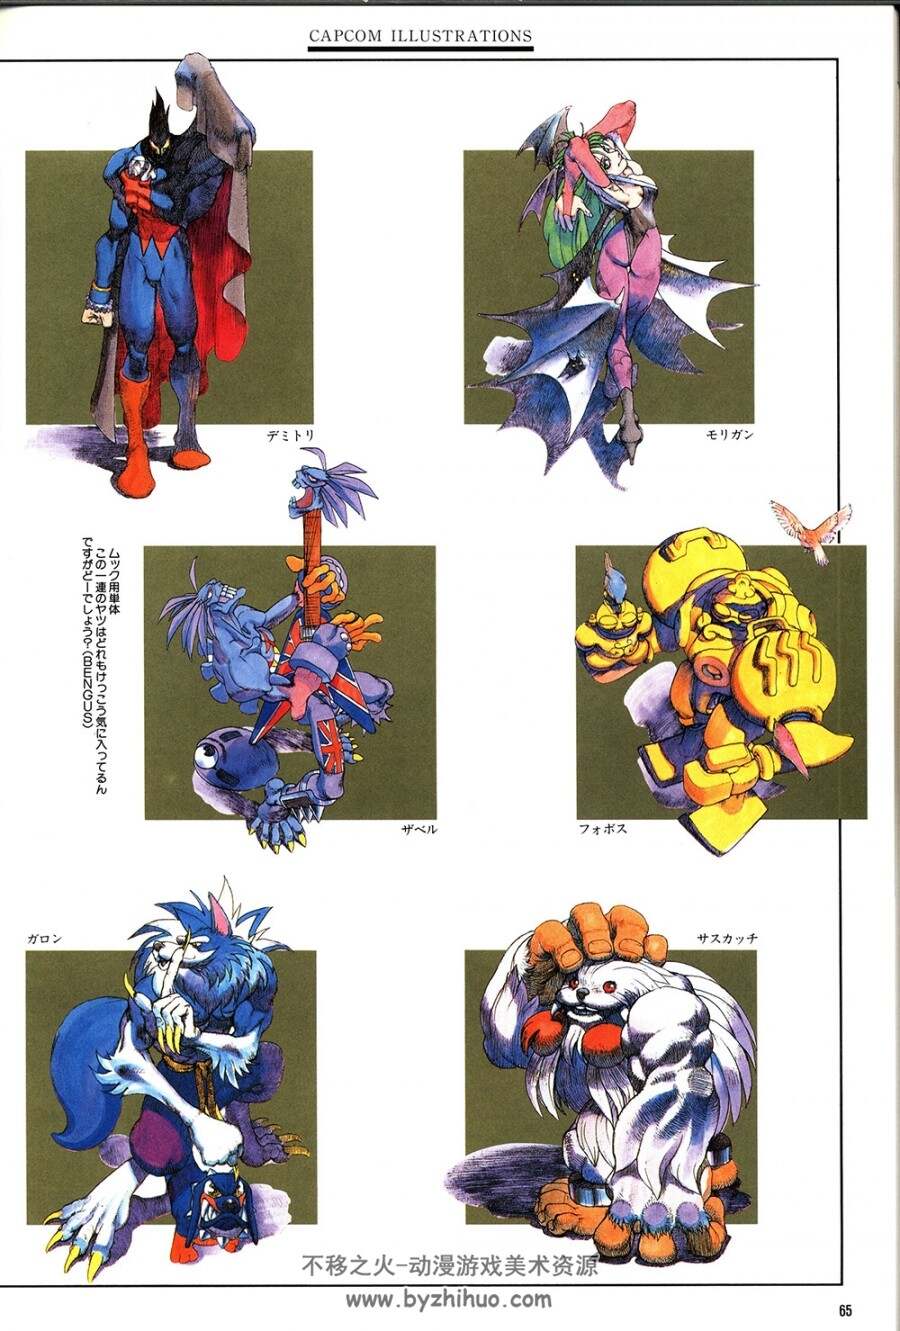 卡普空Capcom Illustrations カブコンイラスト作品集Gamest Mook vol.17/165P/215M.jpg